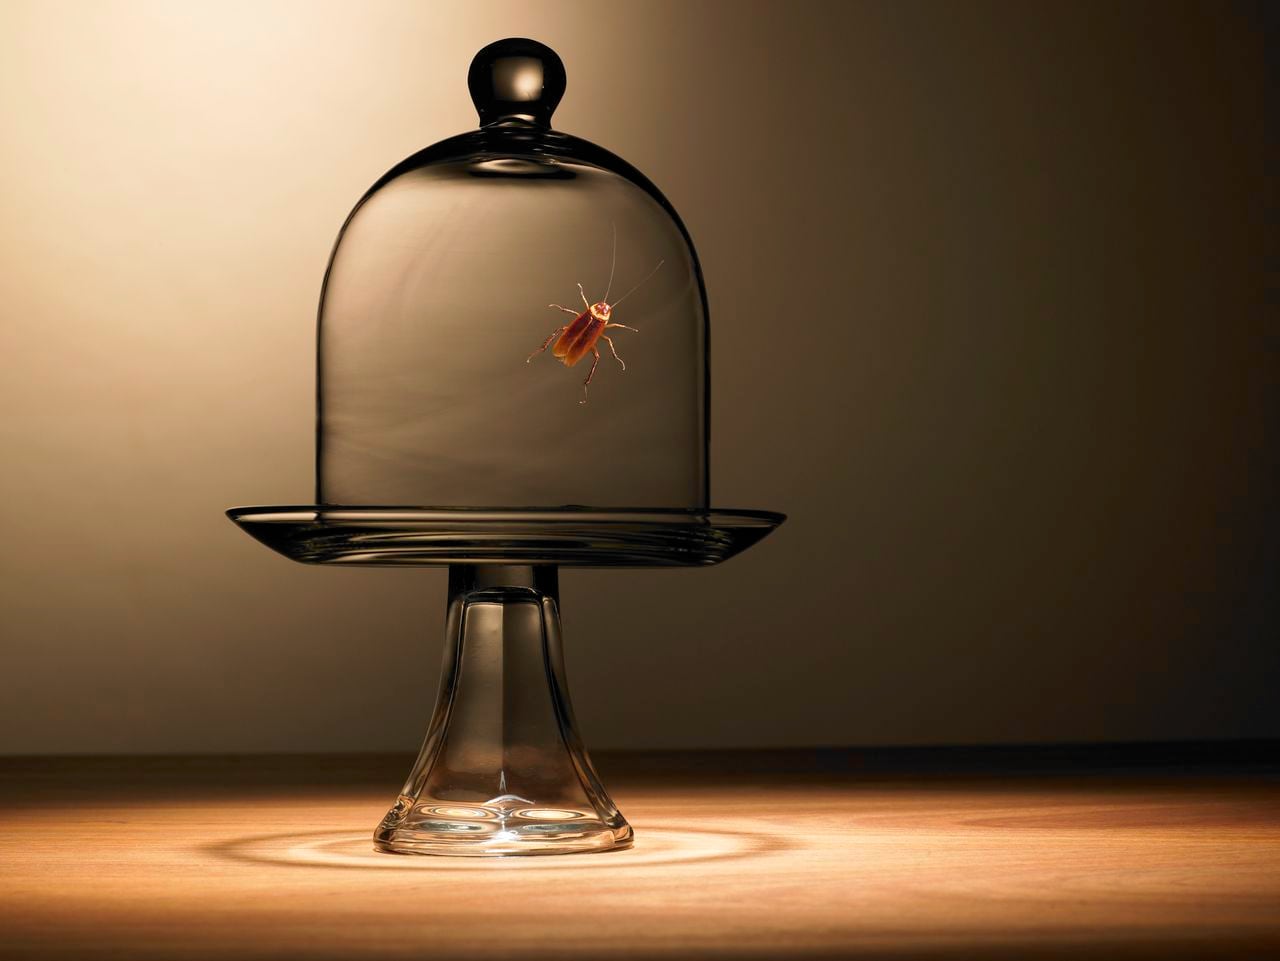 En un recipiente de vidrio aguarda una cucaracha.